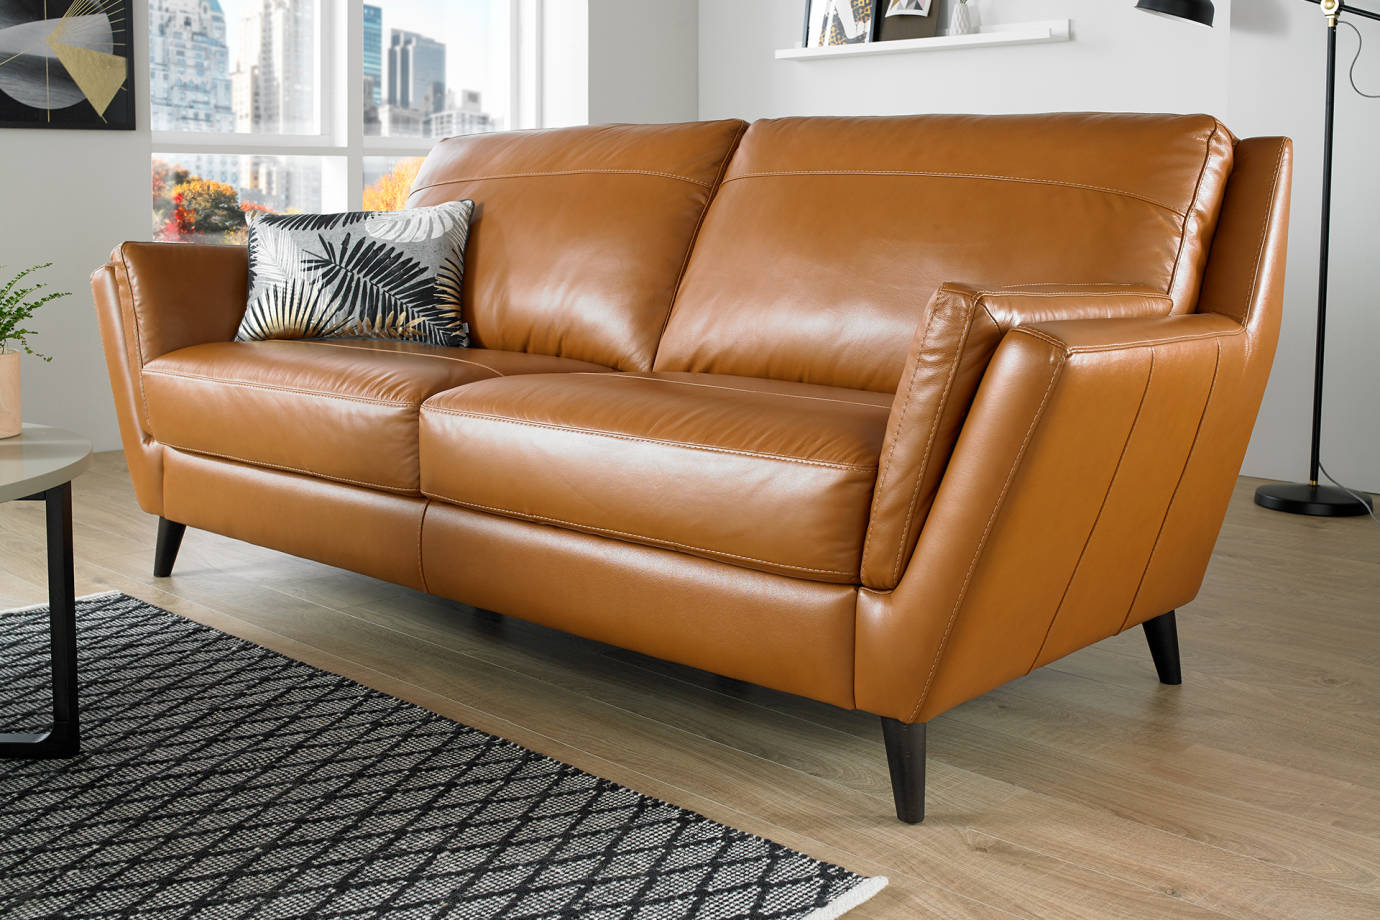 Leather Sofas Sofology, Orange Leather Furniture